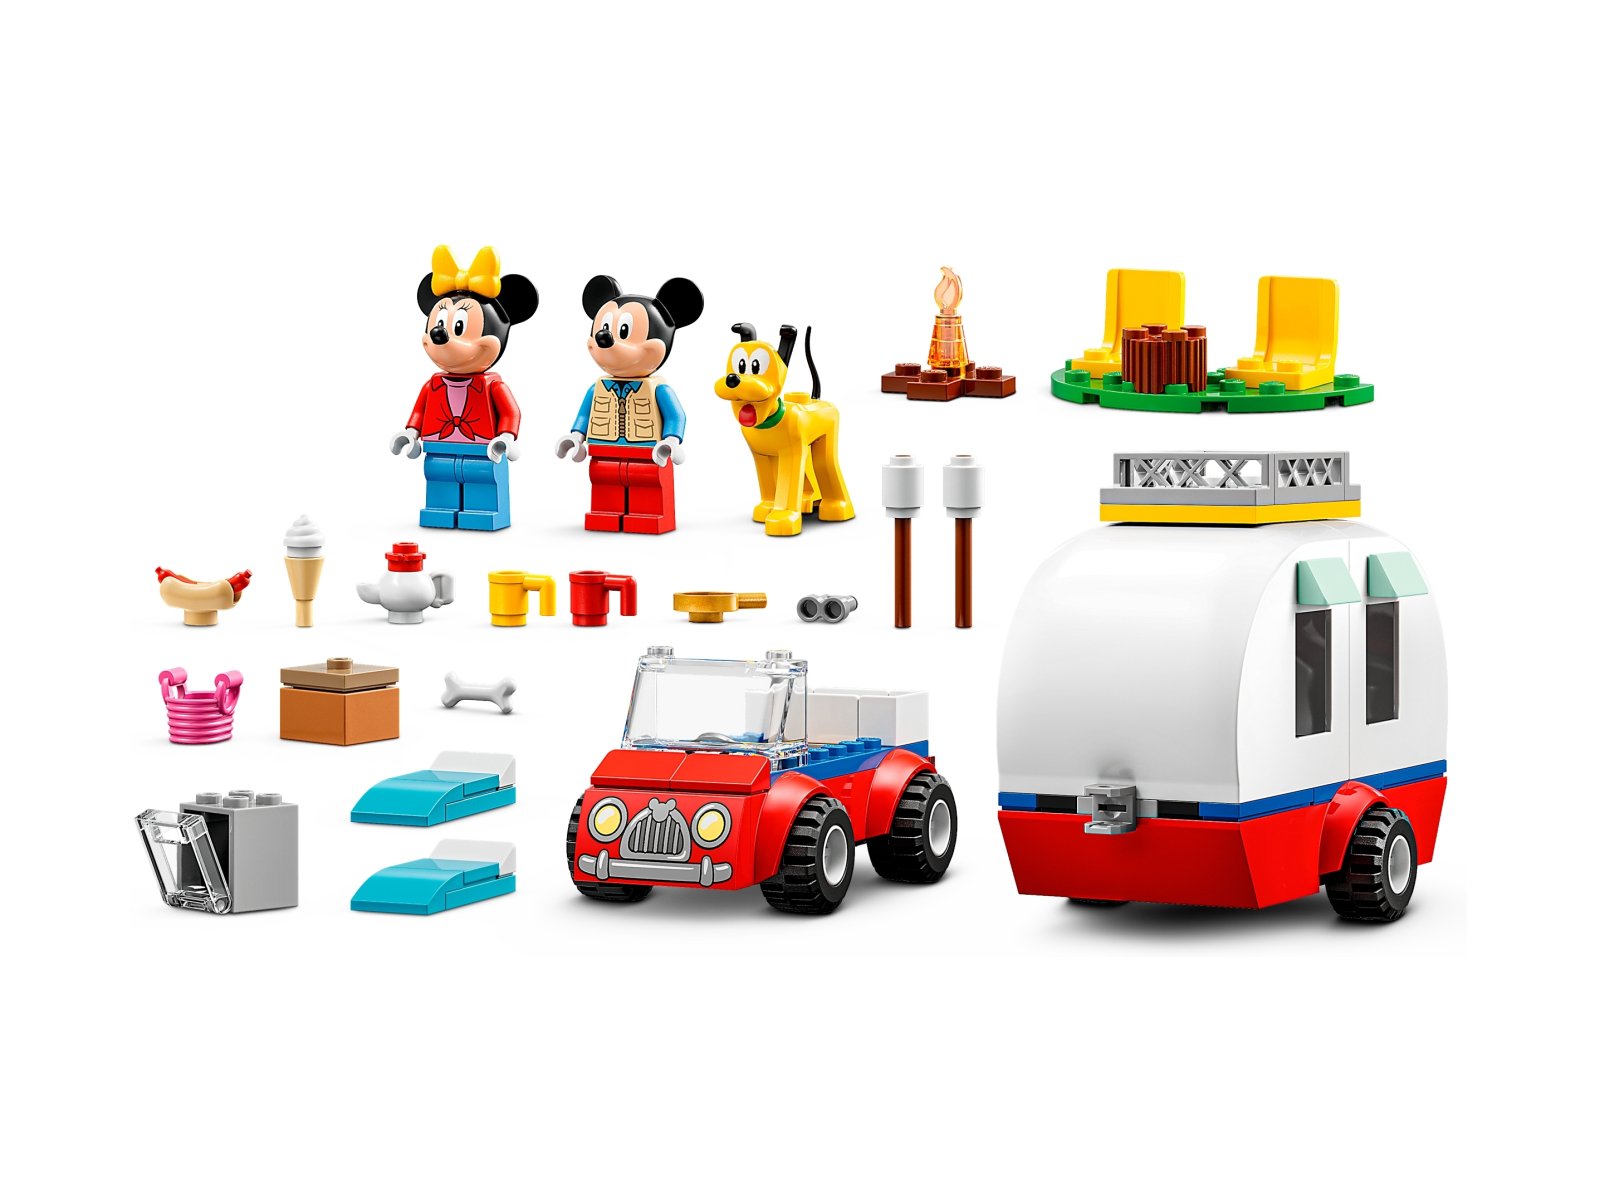 LEGO Disney Myszka Miki i Myszka Minnie na biwaku 10777